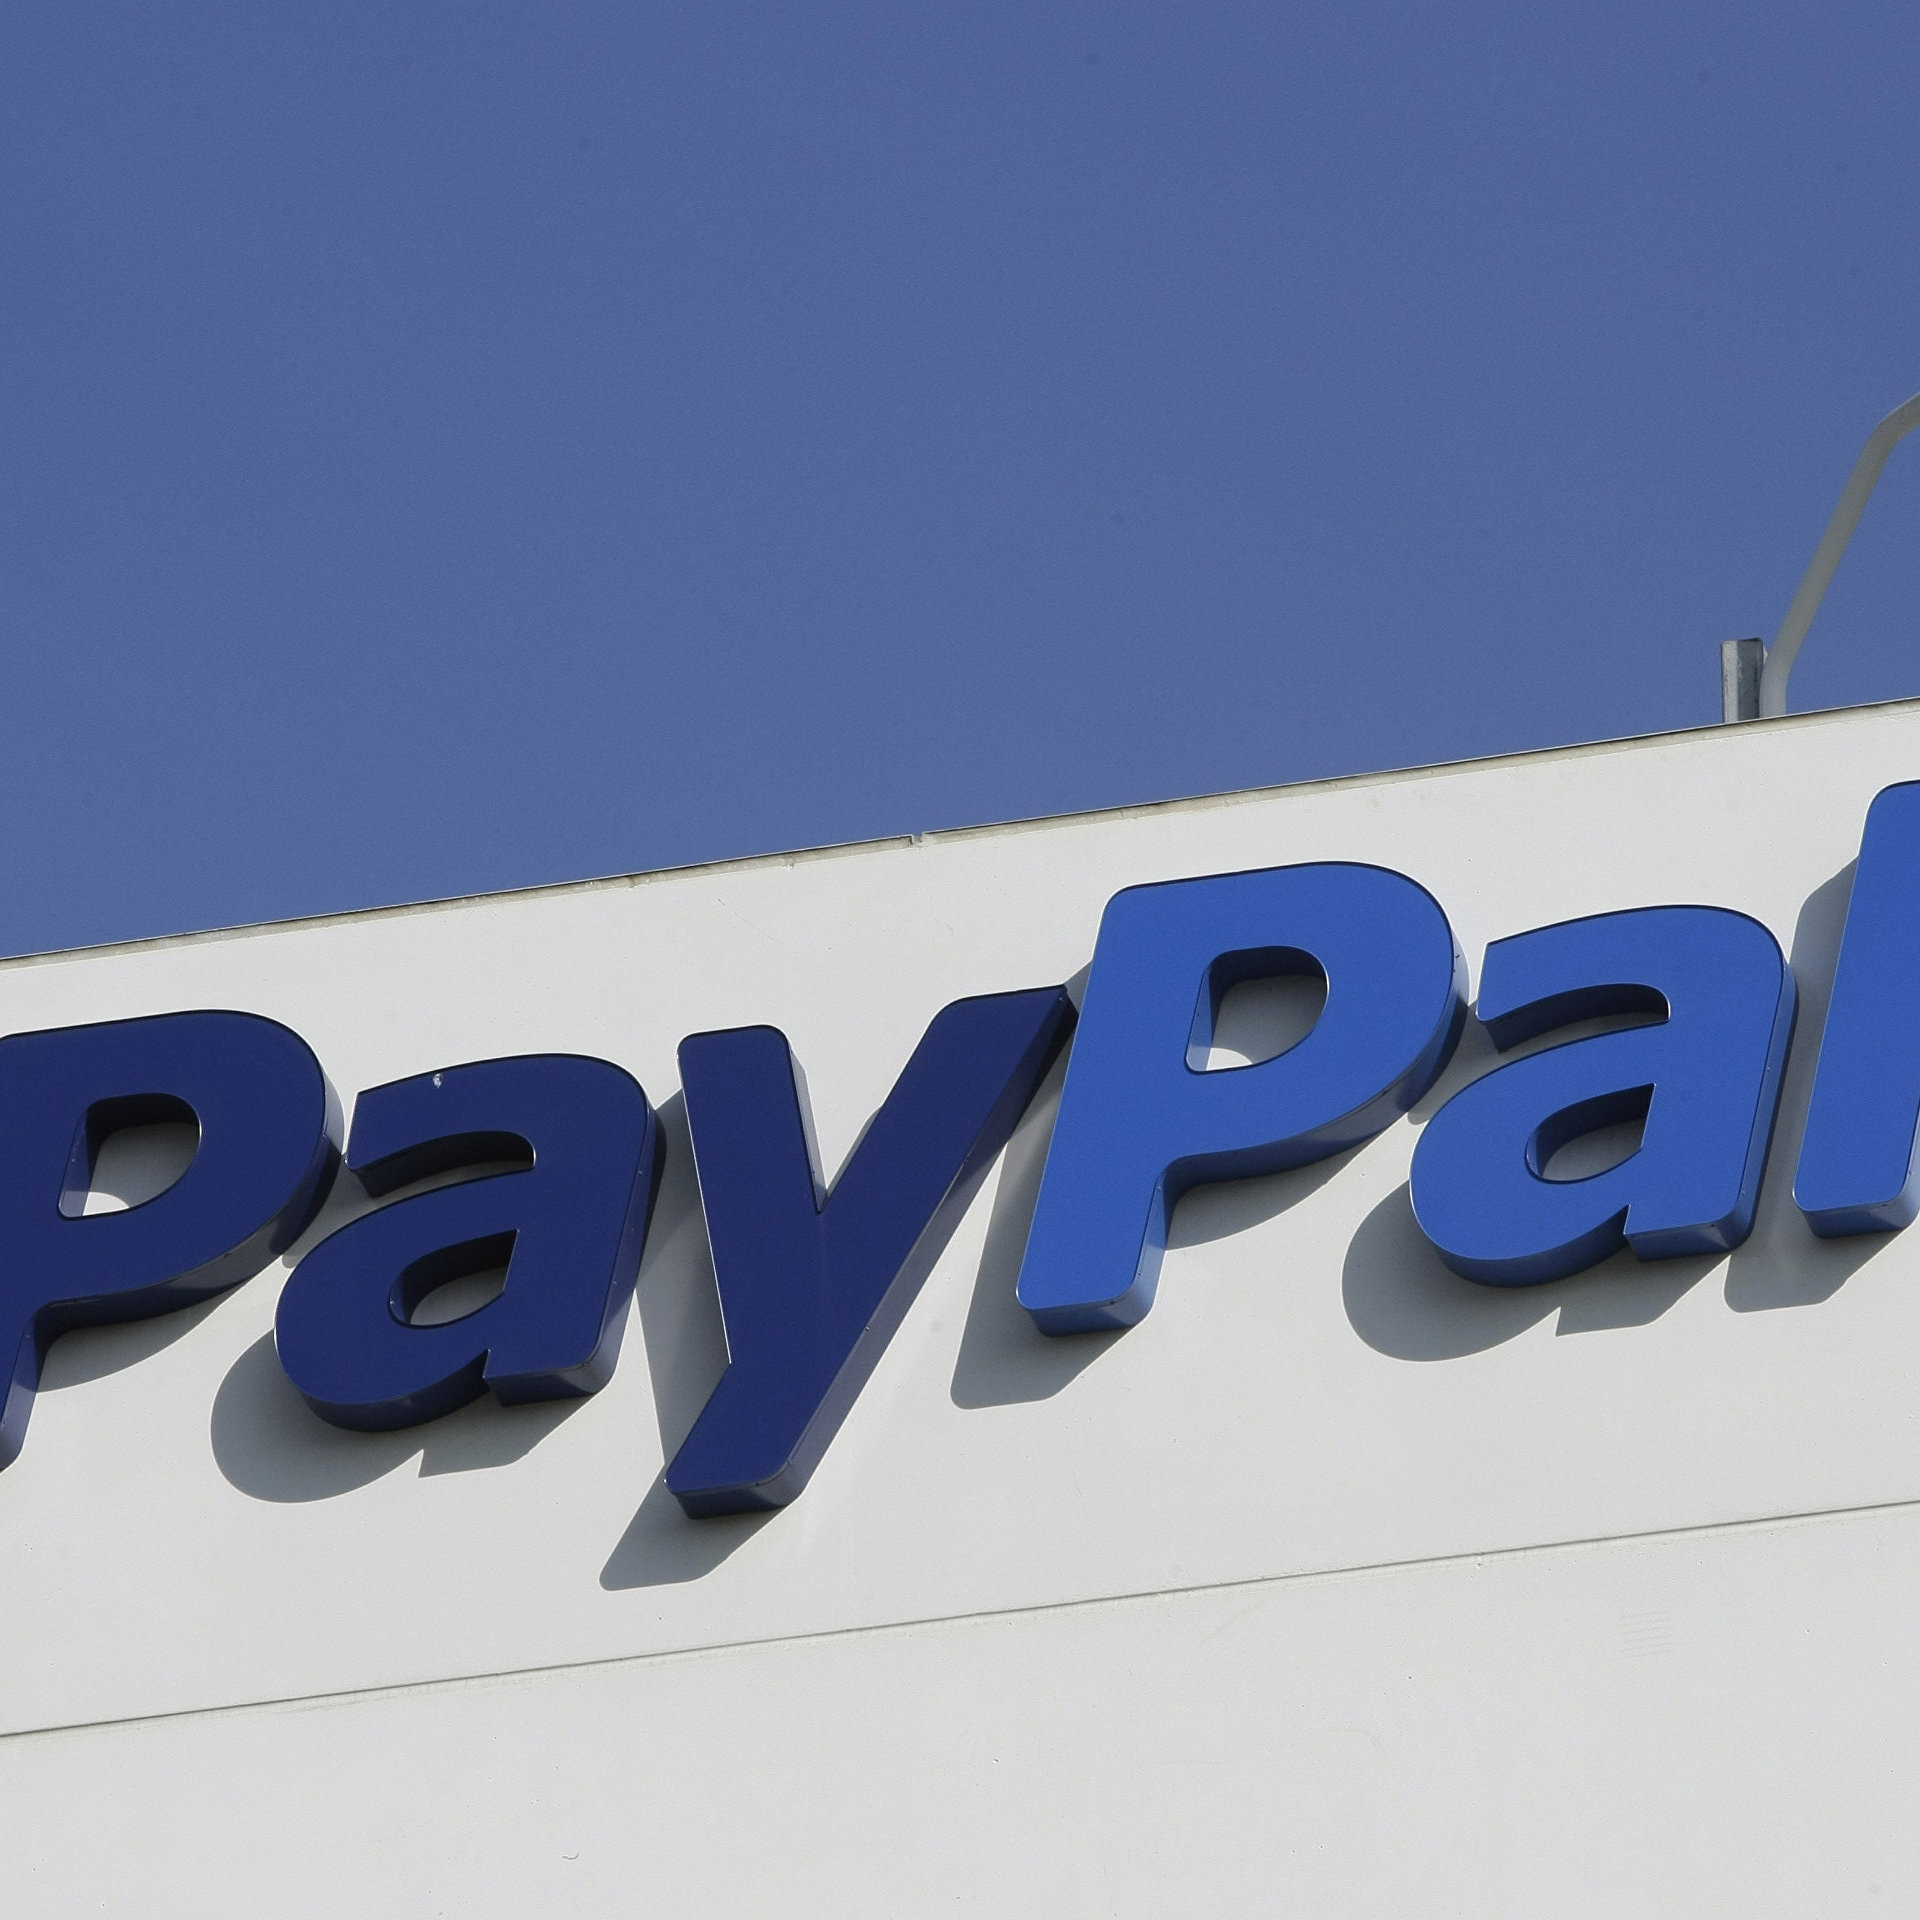 Прибыль PayPal Holdings за третий квартал составила 96 центов на акцию